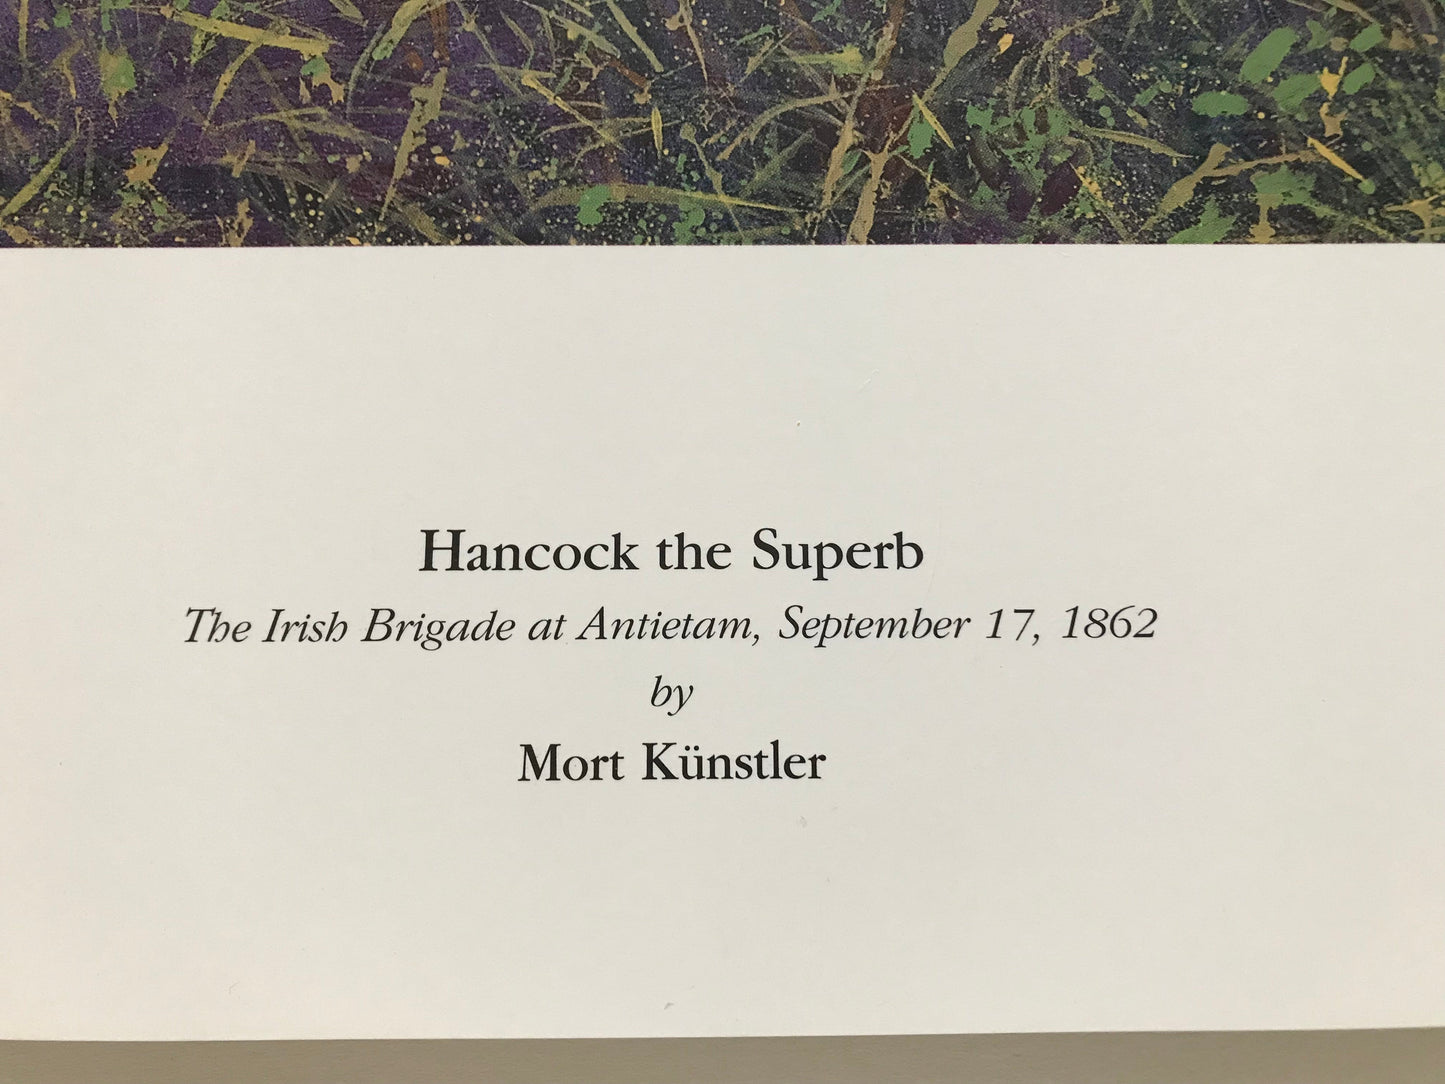 HANCOCK THE SUPERB  - A Civil War Limited Edition Print by Mort Kunstler